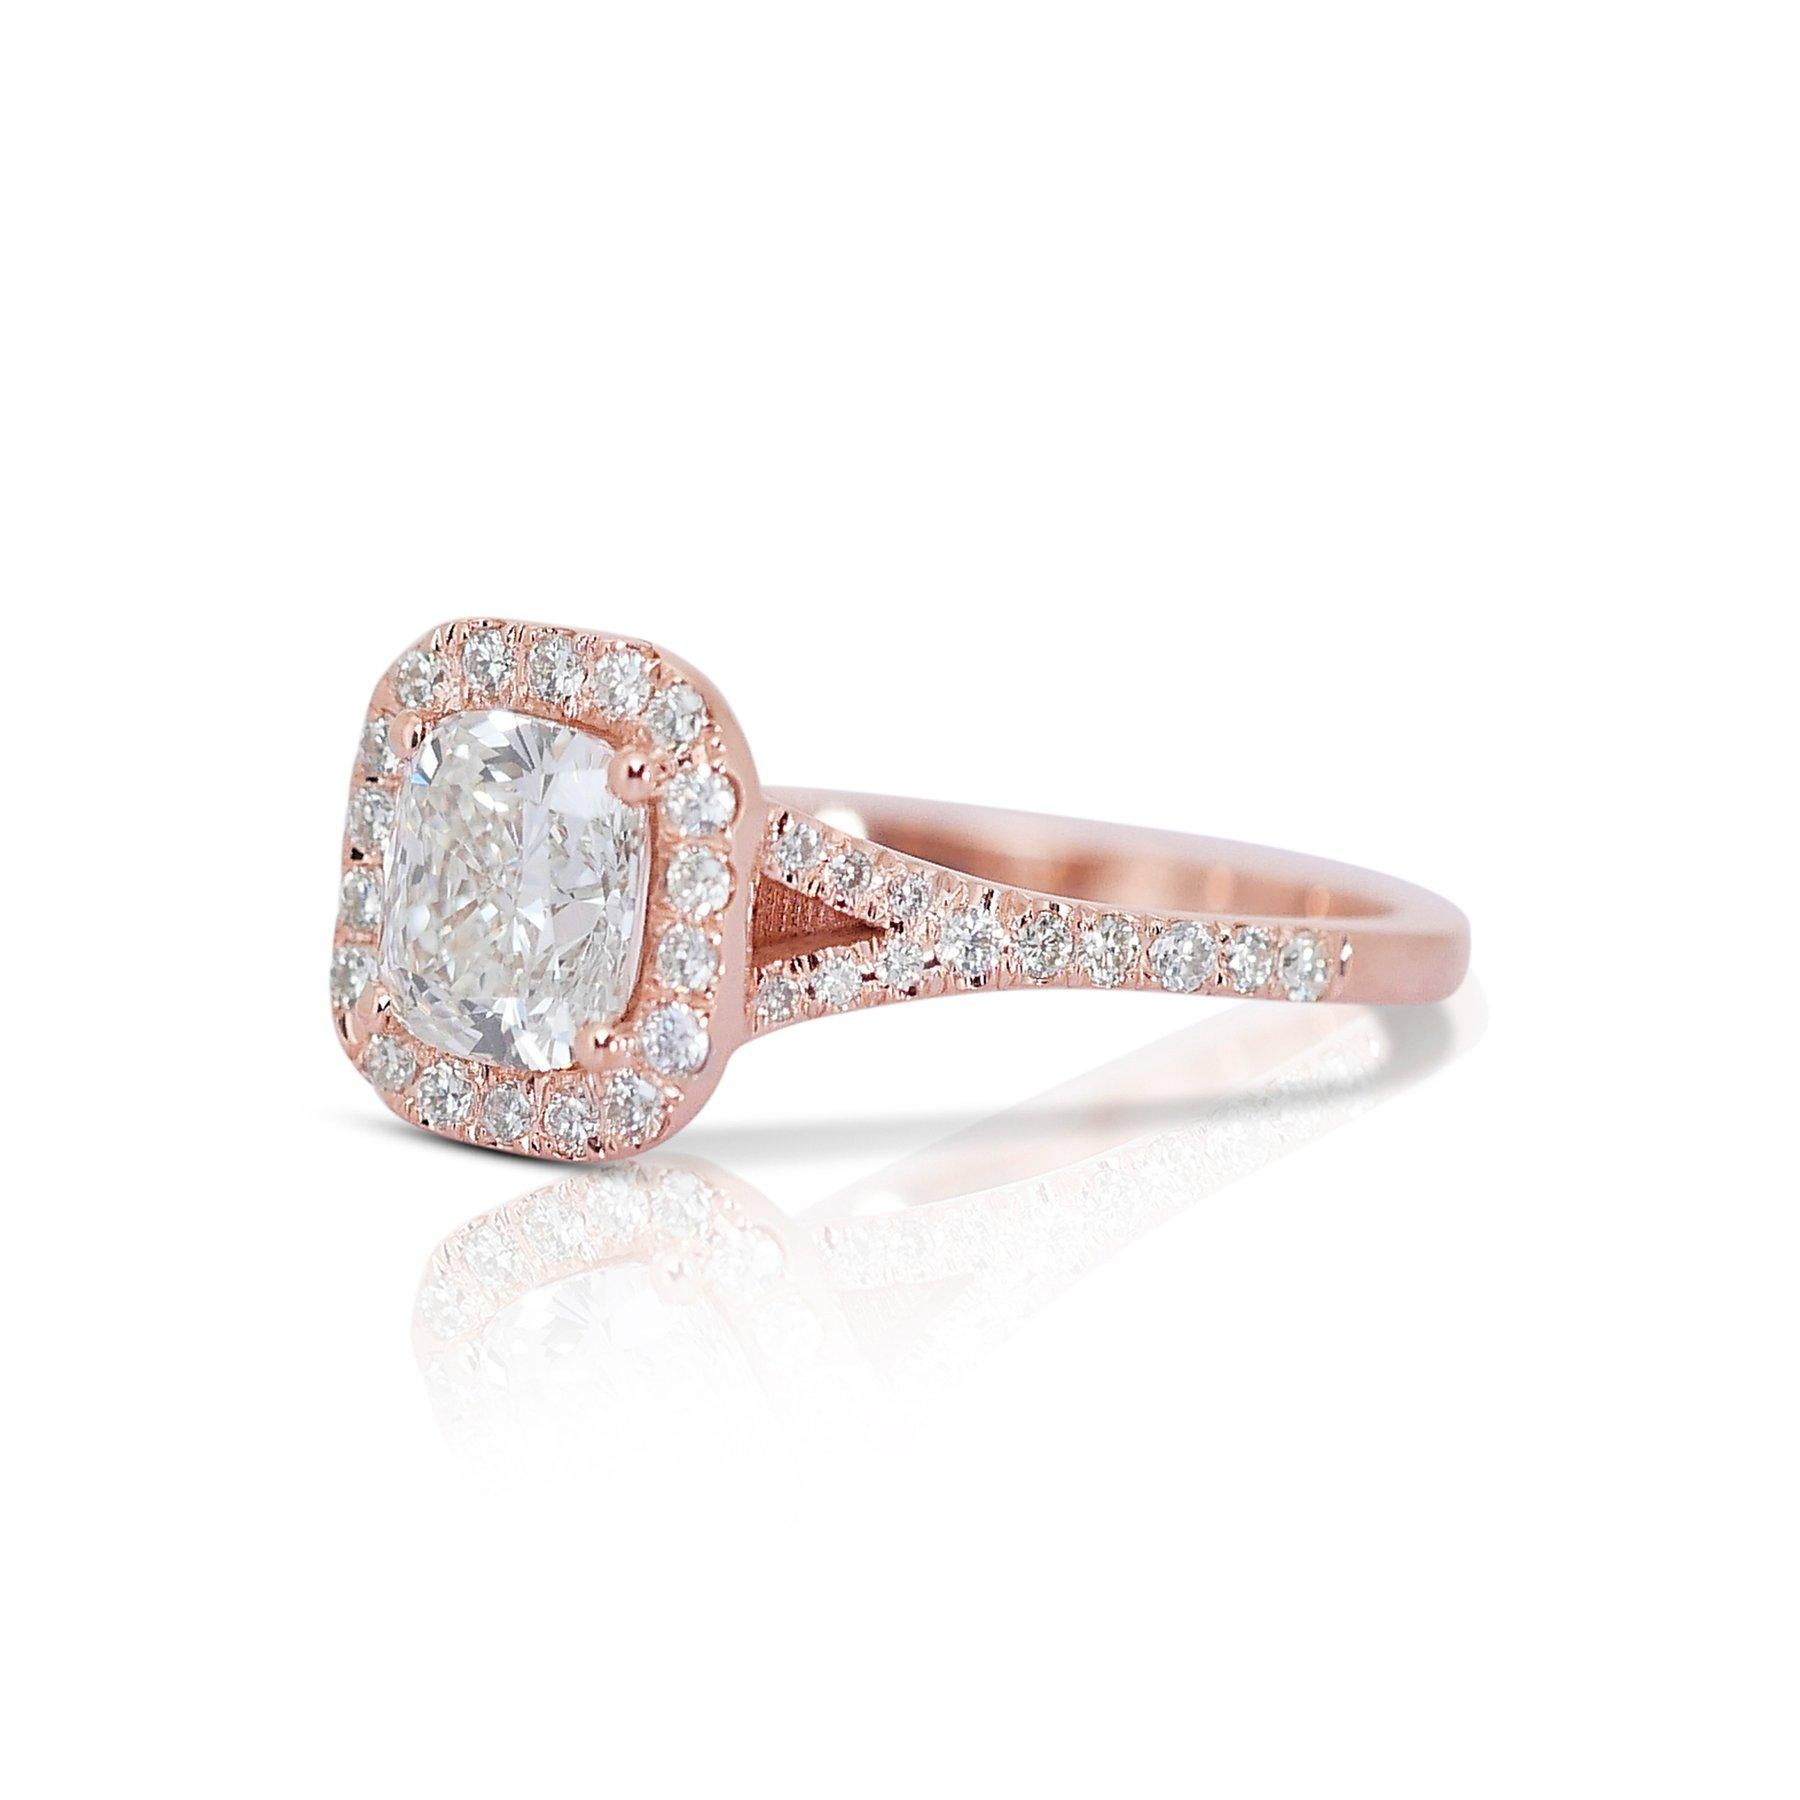 Eleganter 1,28ct Diamant-Halo-Ring in 18k Rose Gold - GIA zertifiziert

Dieser luxuriöse Halo-Ring aus 18 Karat Roségold ist mit einem atemberaubenden Diamanten im Kissenschliff von 1,02 Karat besetzt. Um den Hauptstein herum sind 24 runde Diamanten